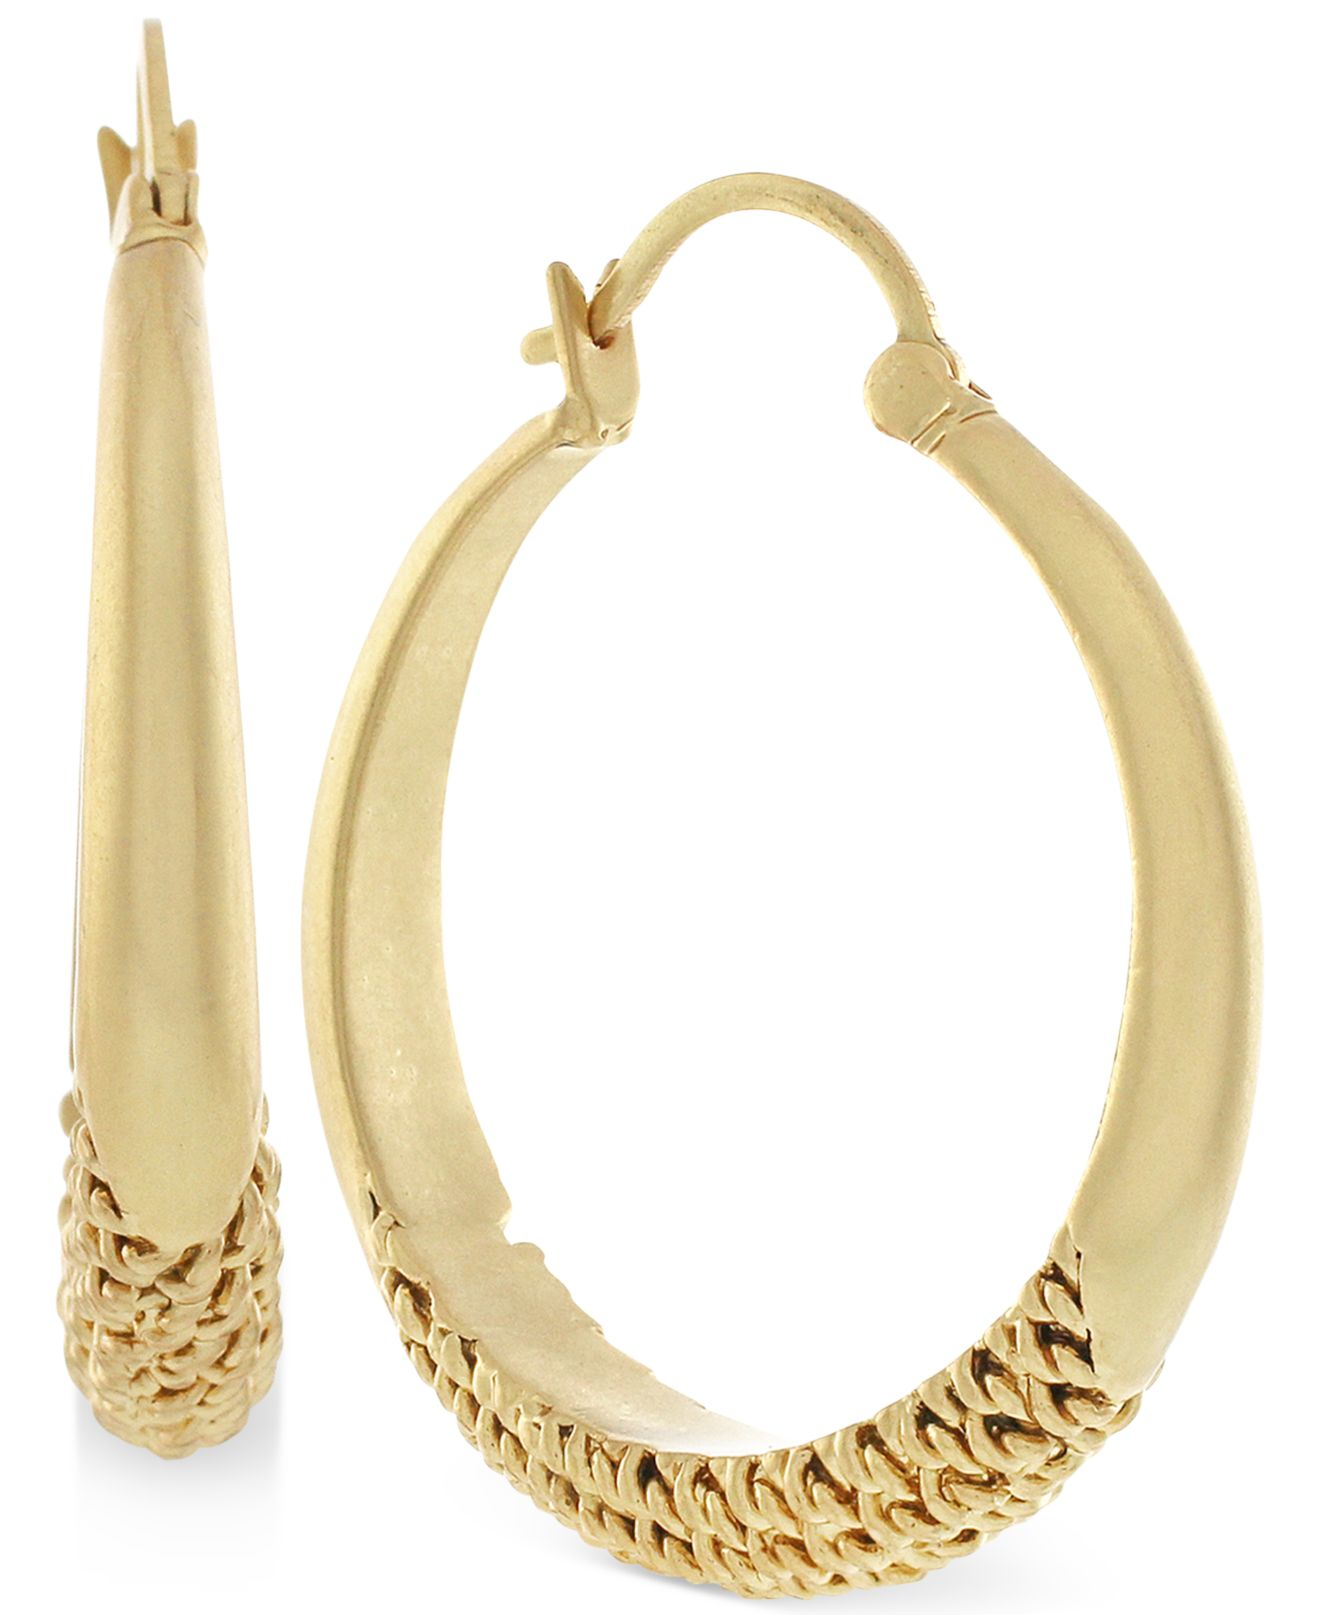 Lyst - Vince camuto Gold-tone Linear Huggie Hoop Earrings in Metallic